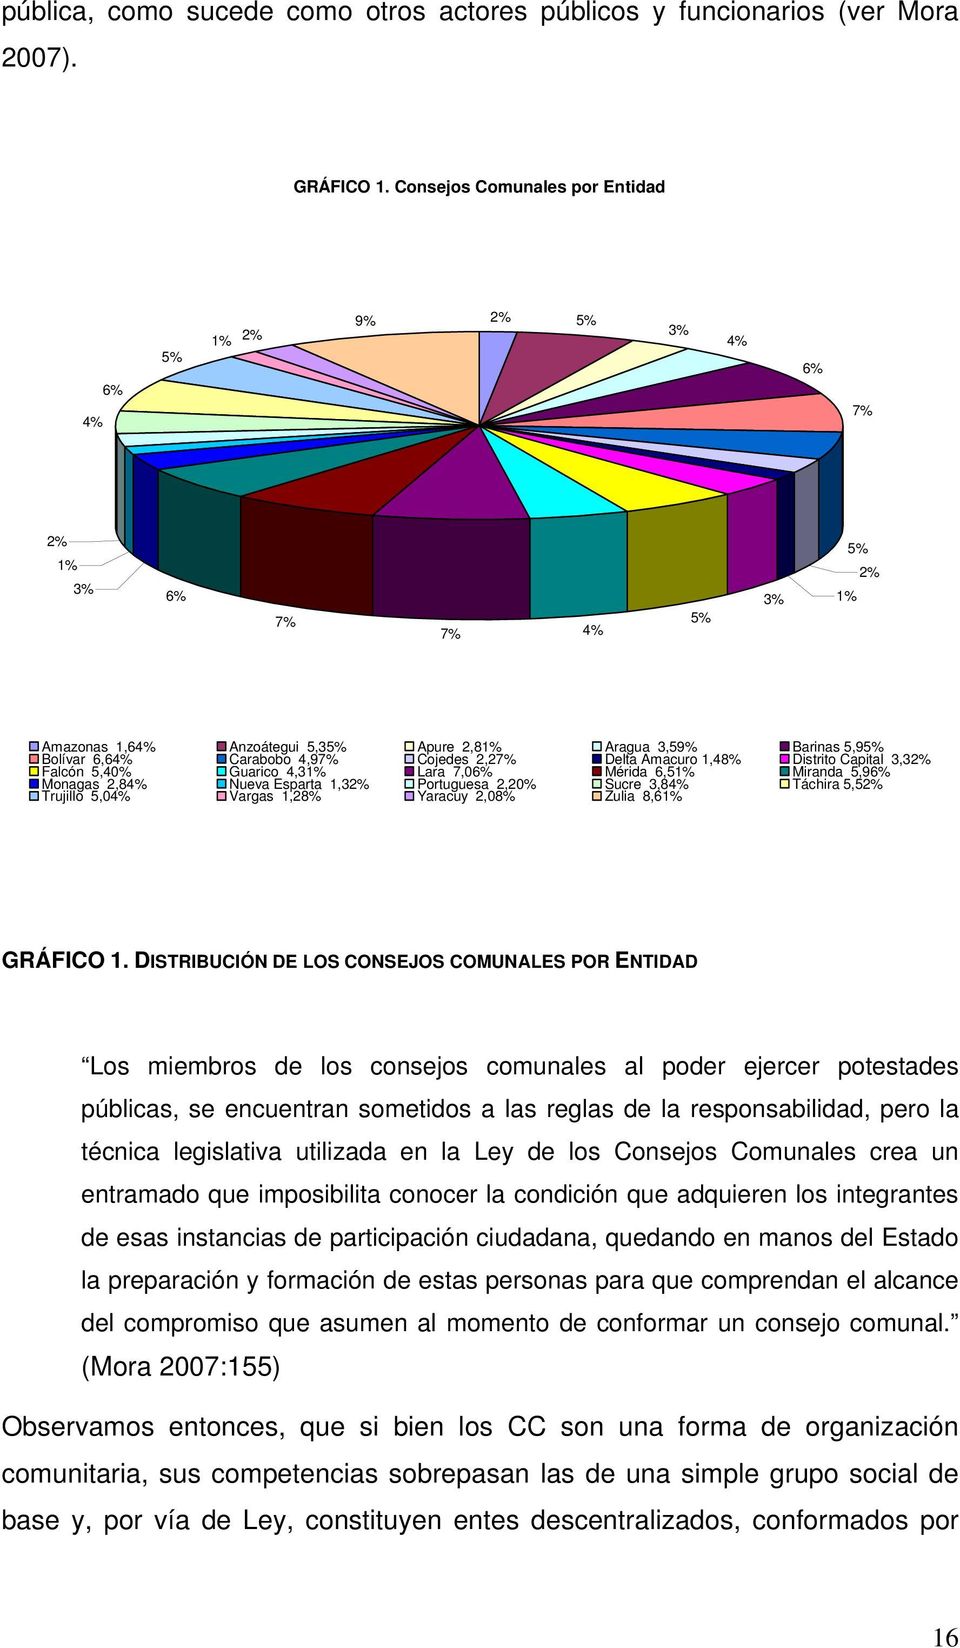 4,97% Cojedes 2,27% Delta Amacuro 1,48% Distrito Capital 3,32% Falcón 5,40% Guarico 4,31% Lara 7,06% Mérida 6,51% Miranda 5,96% Monagas 2,84% Trujillo 5,04% Nueva Esparta 1,32% Vargas 1,28%